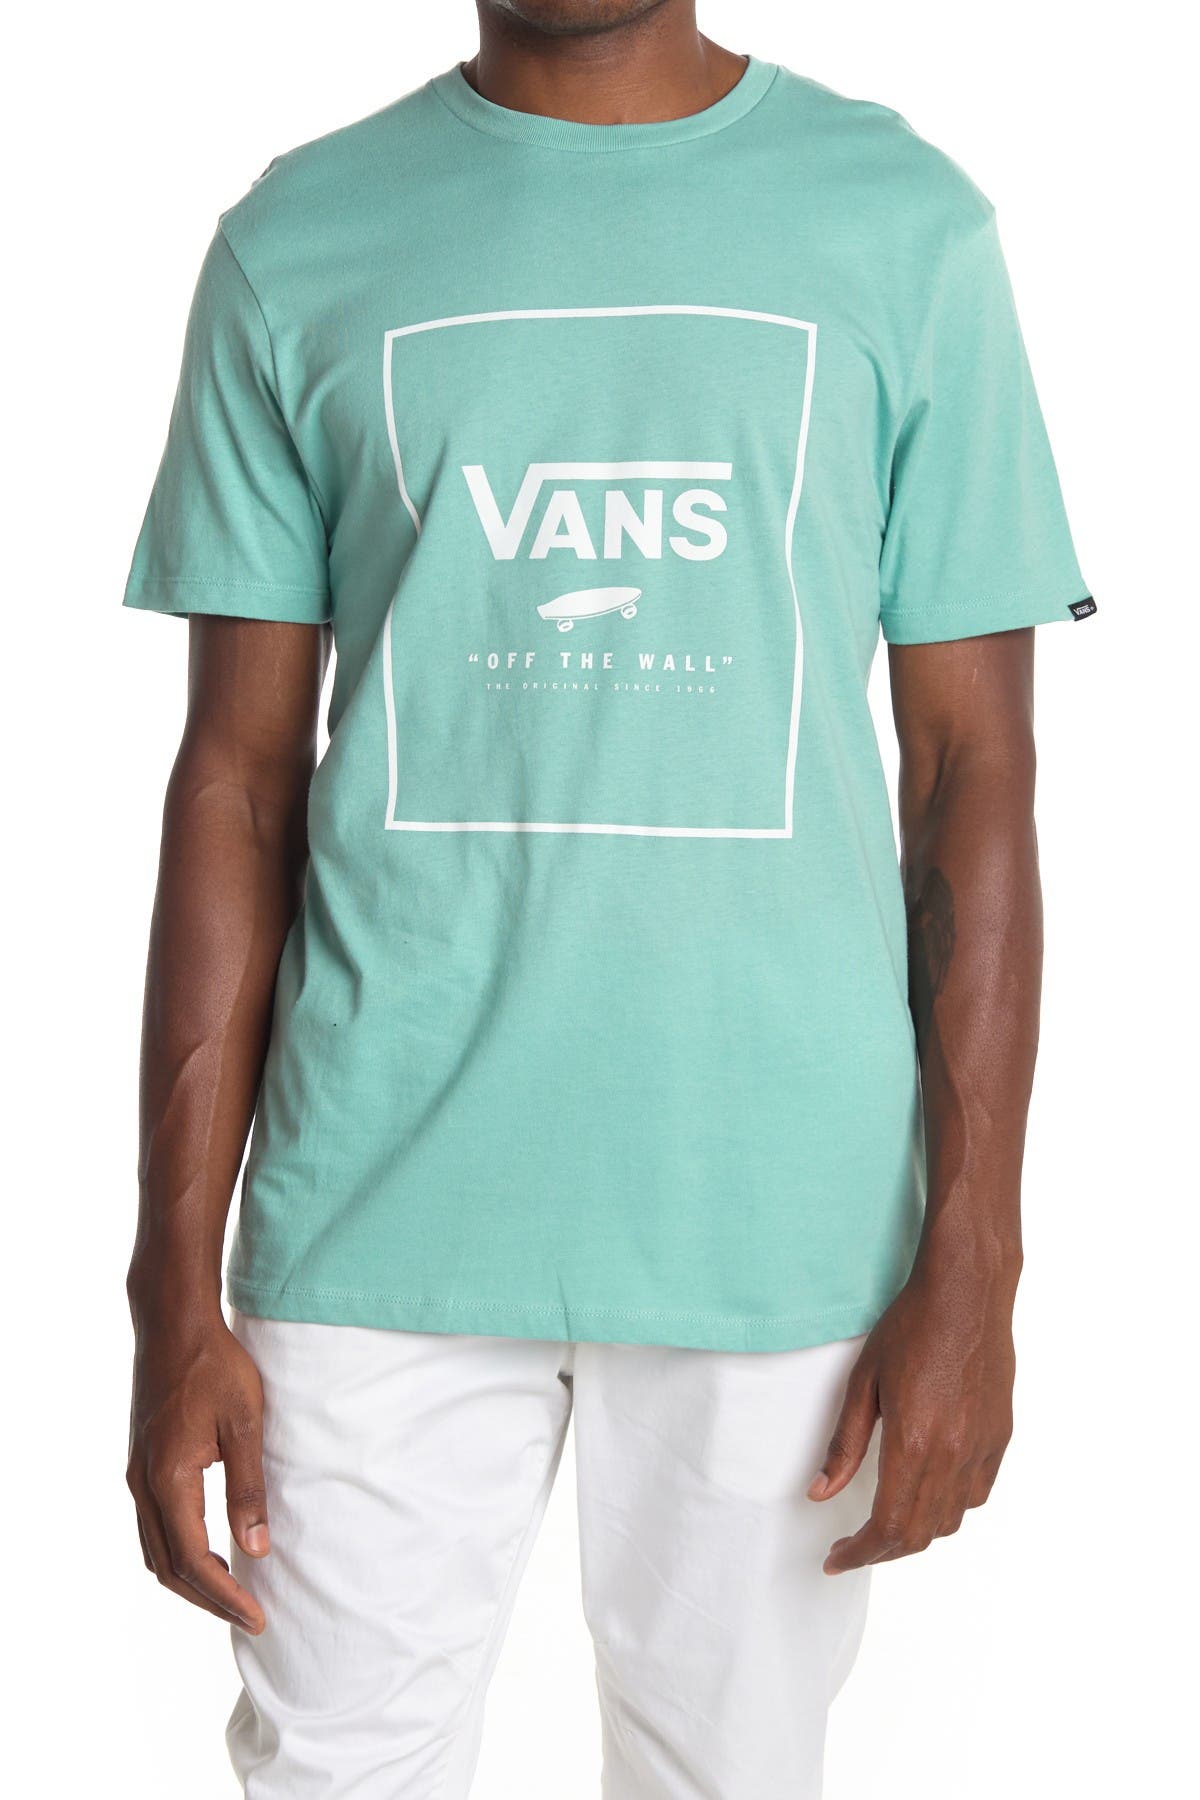 vans box logo t shirt